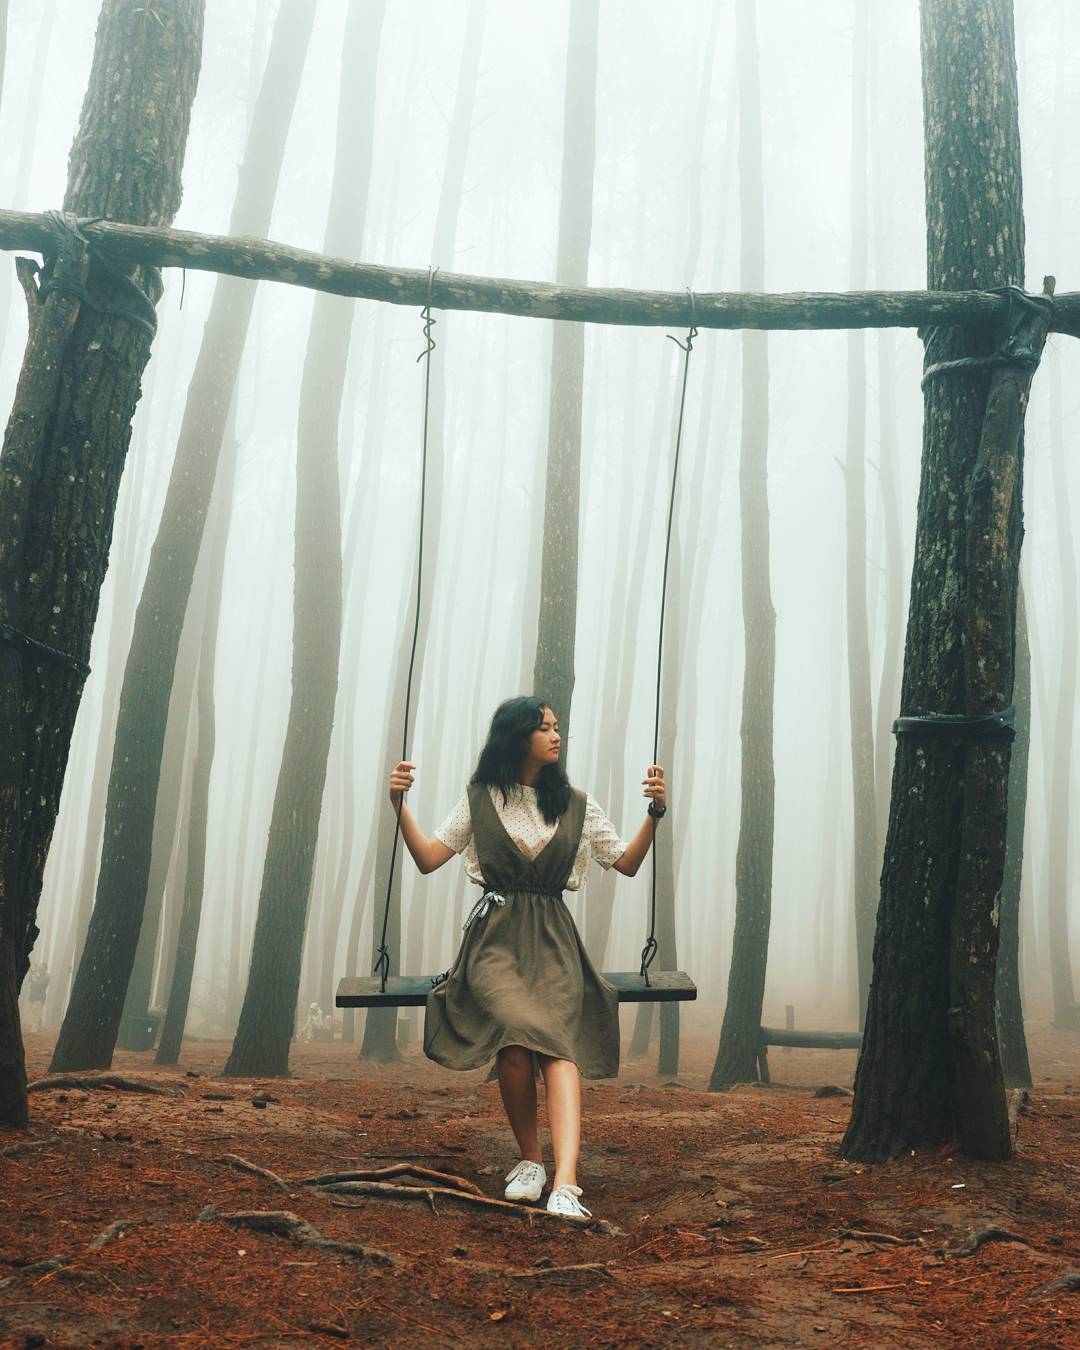 Kumpulan Foto Hutan Pinus Mangunan di Instagram Yang Bikin Betah Nggak Mau Pulang